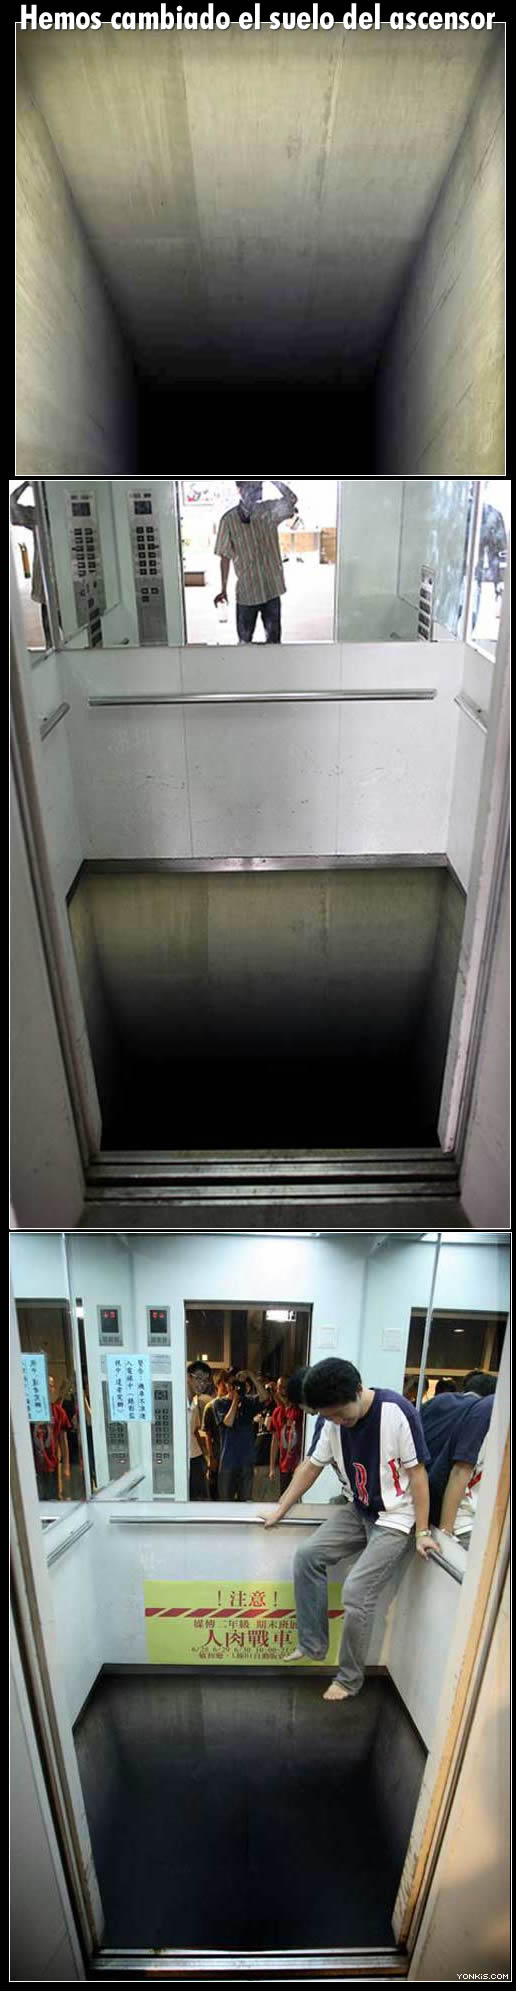 Ужасный лифт. Самый страшный лифт в мире. Самый ужасный лифт.